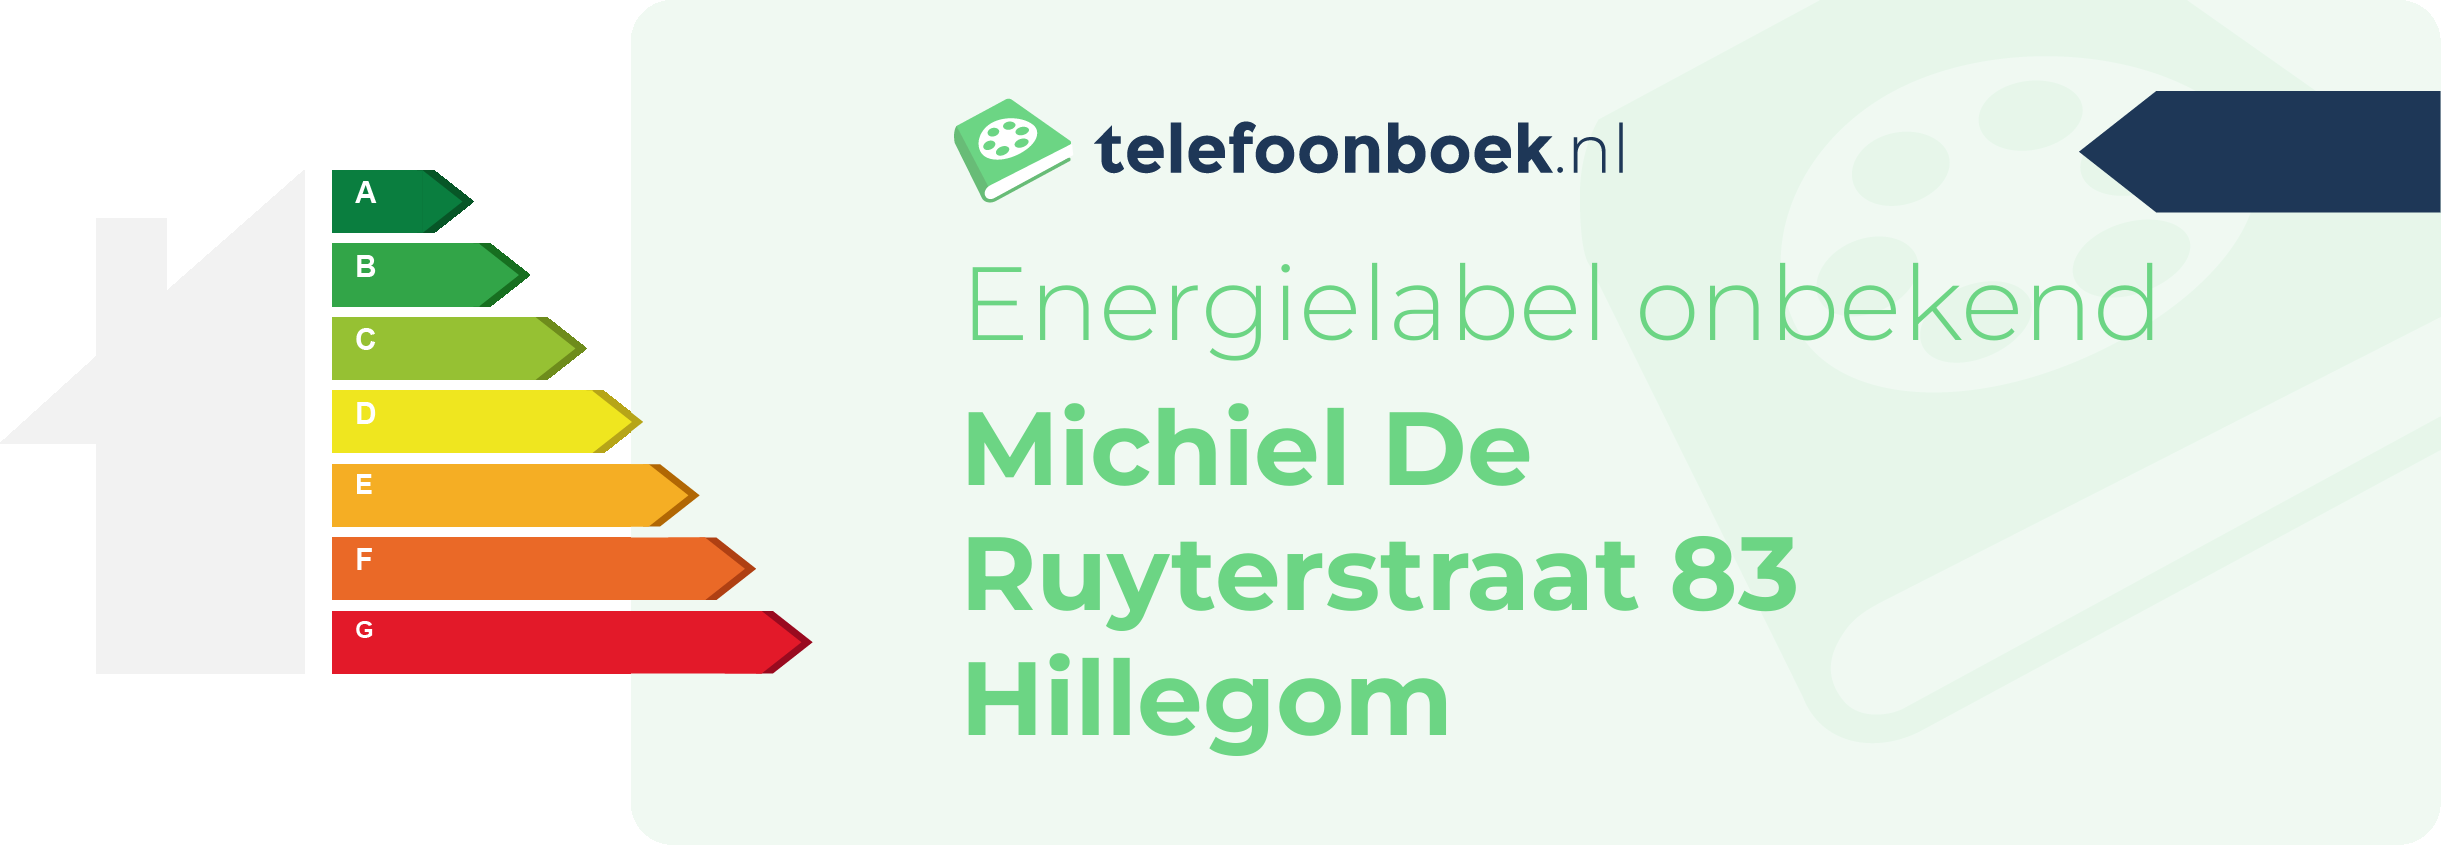 Energielabel Michiel De Ruyterstraat 83 Hillegom